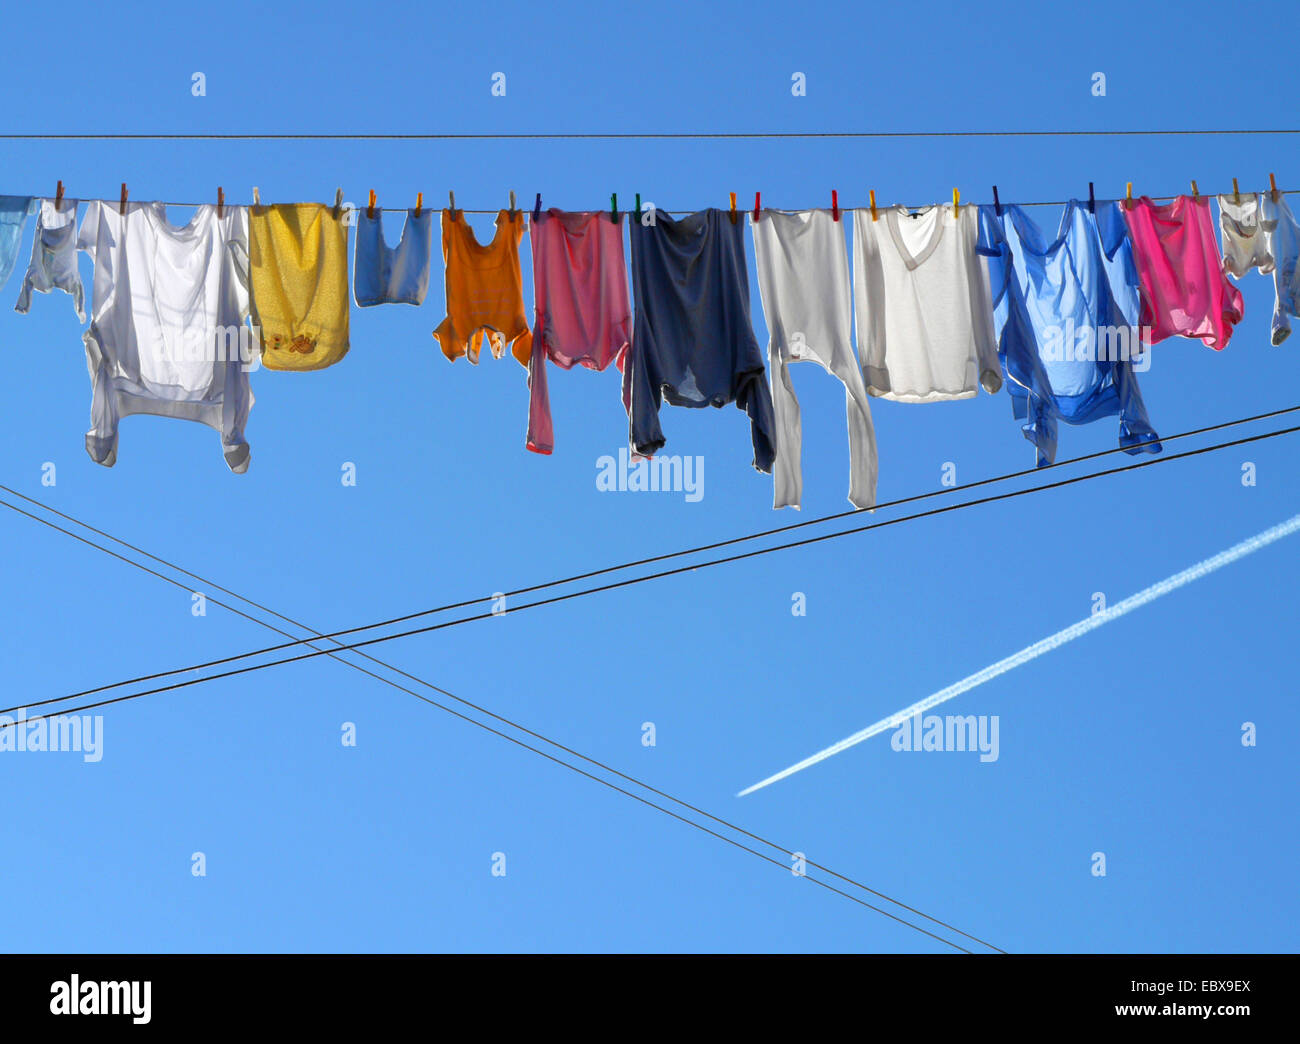 Kleidung zum Trocknen auf einer Wäscheleine aufgehängt Italien, Venedig Stockfoto